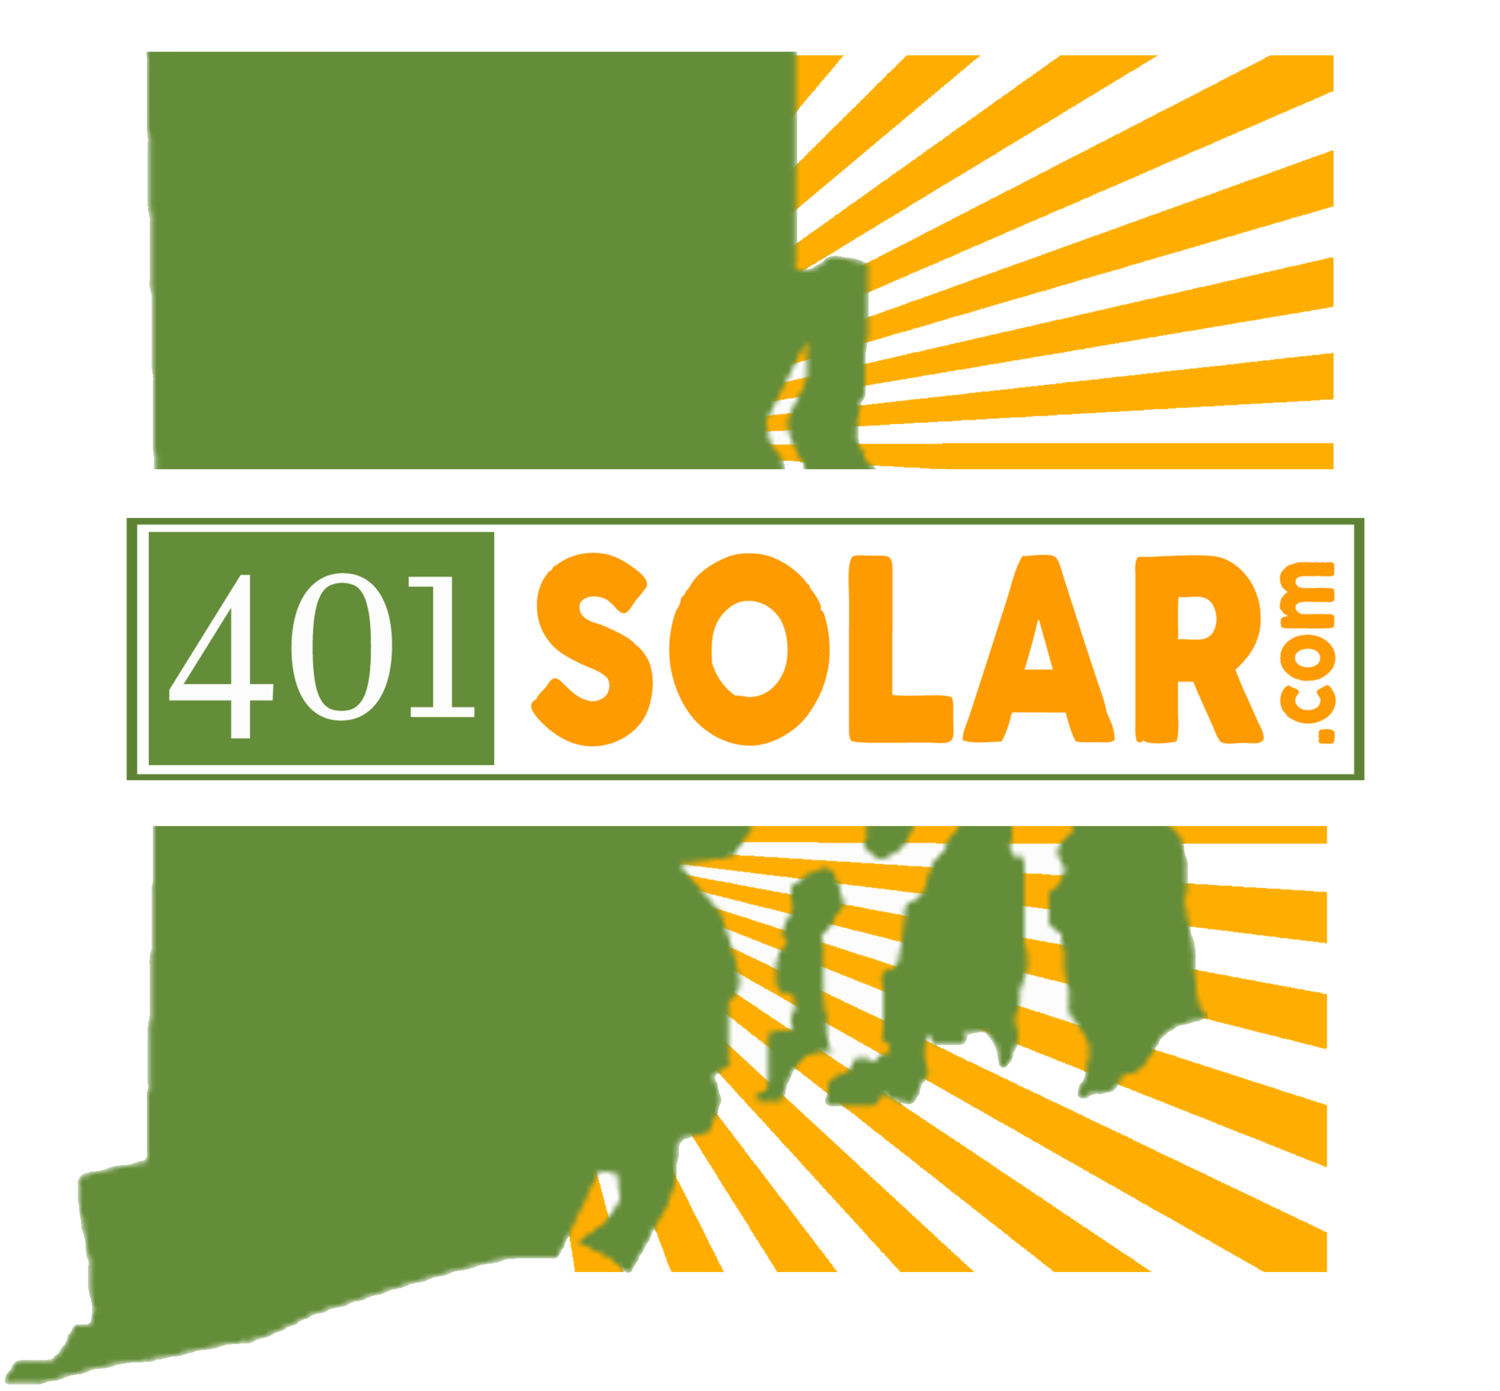 401 Solar